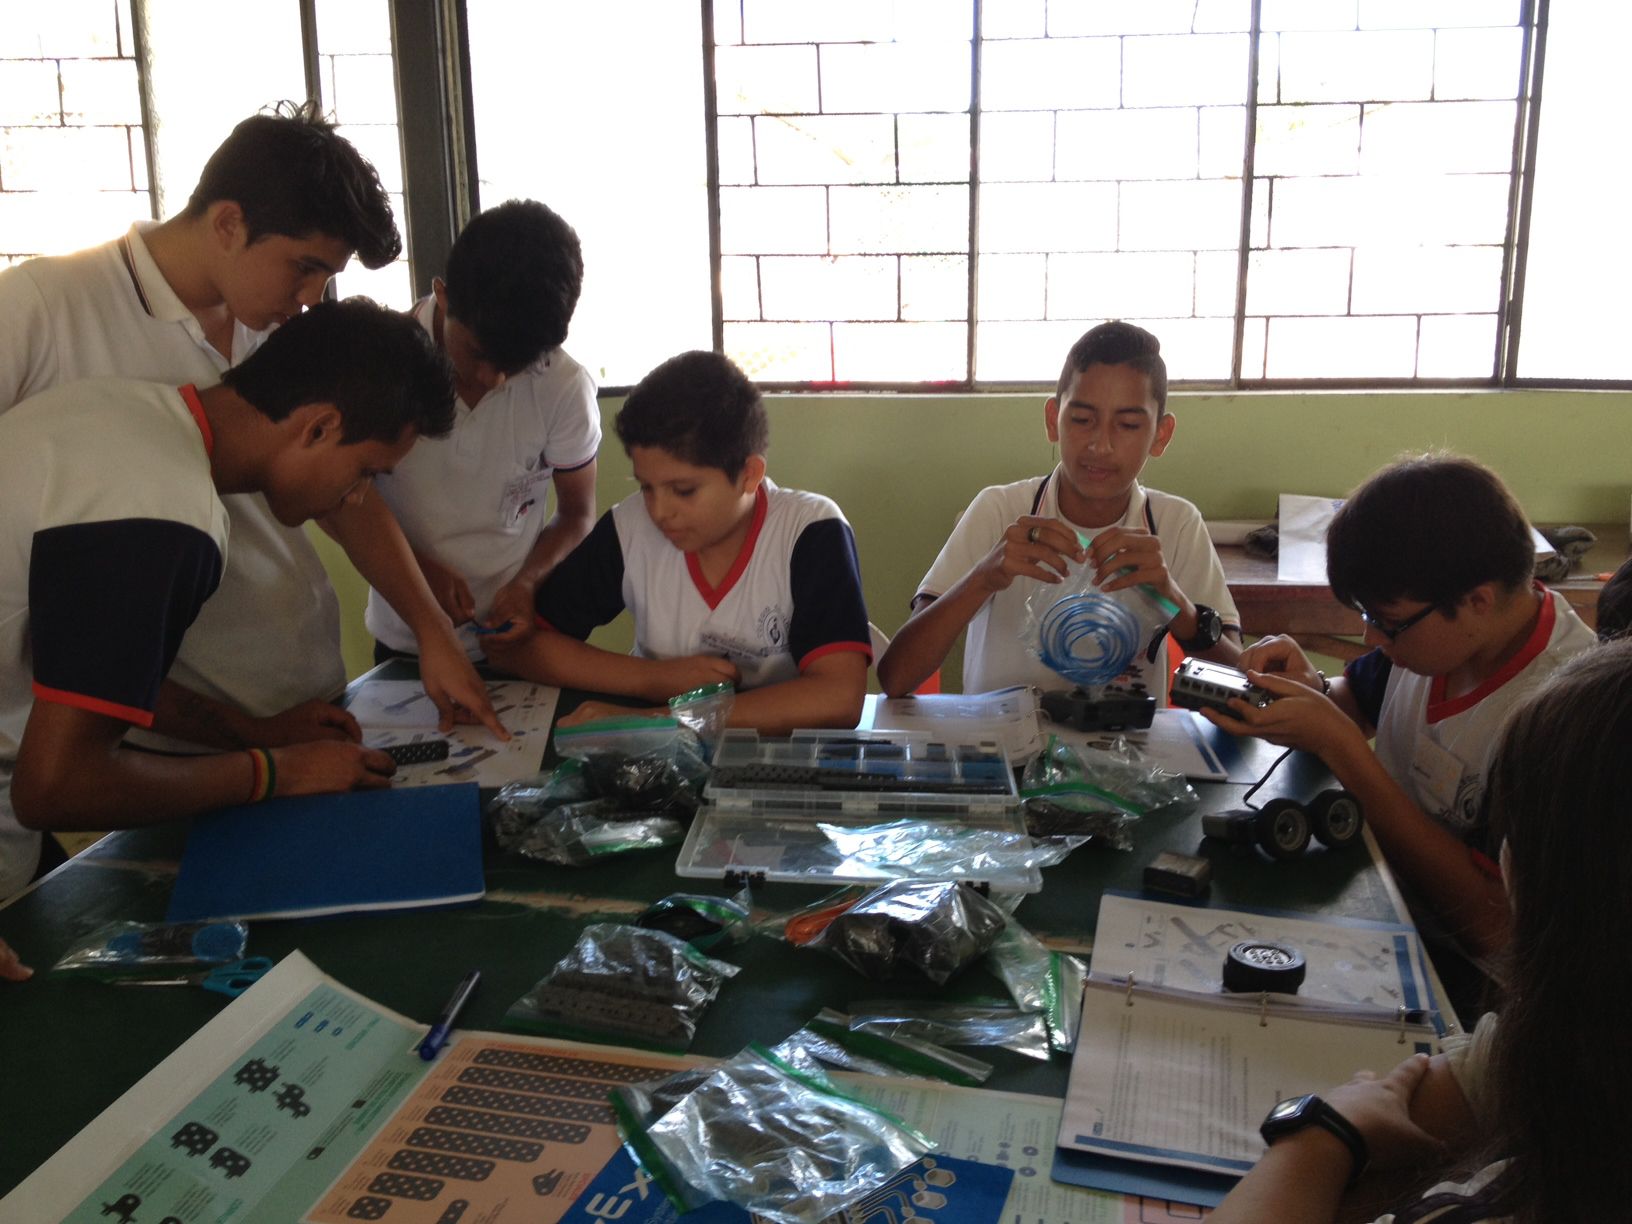 San Miguel de los Bancos students building robots at a table.